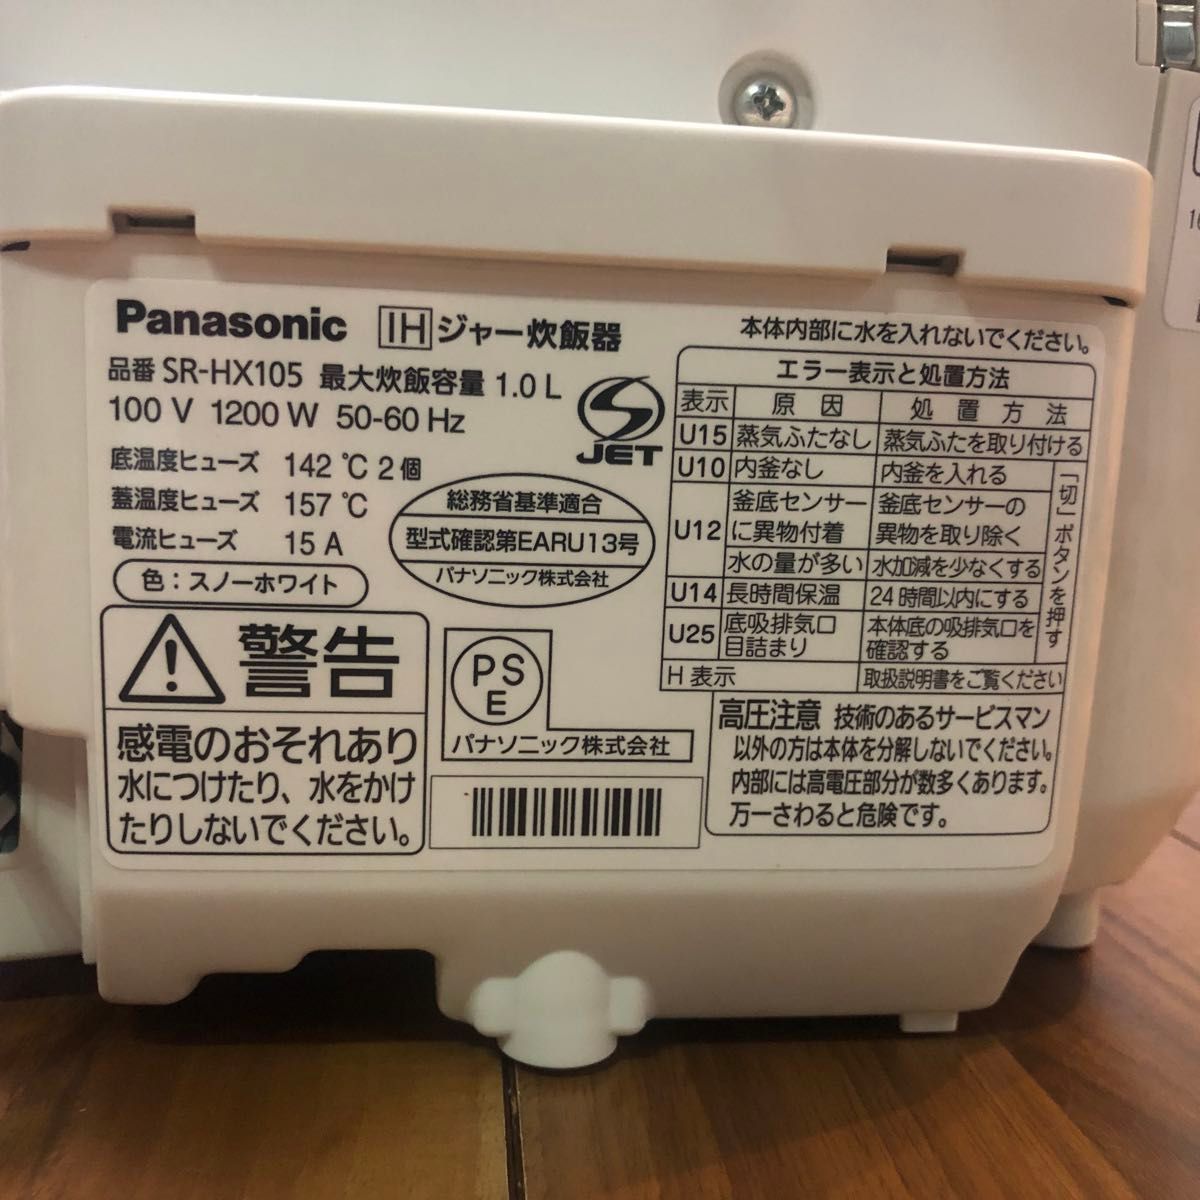 セール価格 炊飯器 Panasonic SR-HX105-W パナソニック IHジャー炊飯器 5合炊き